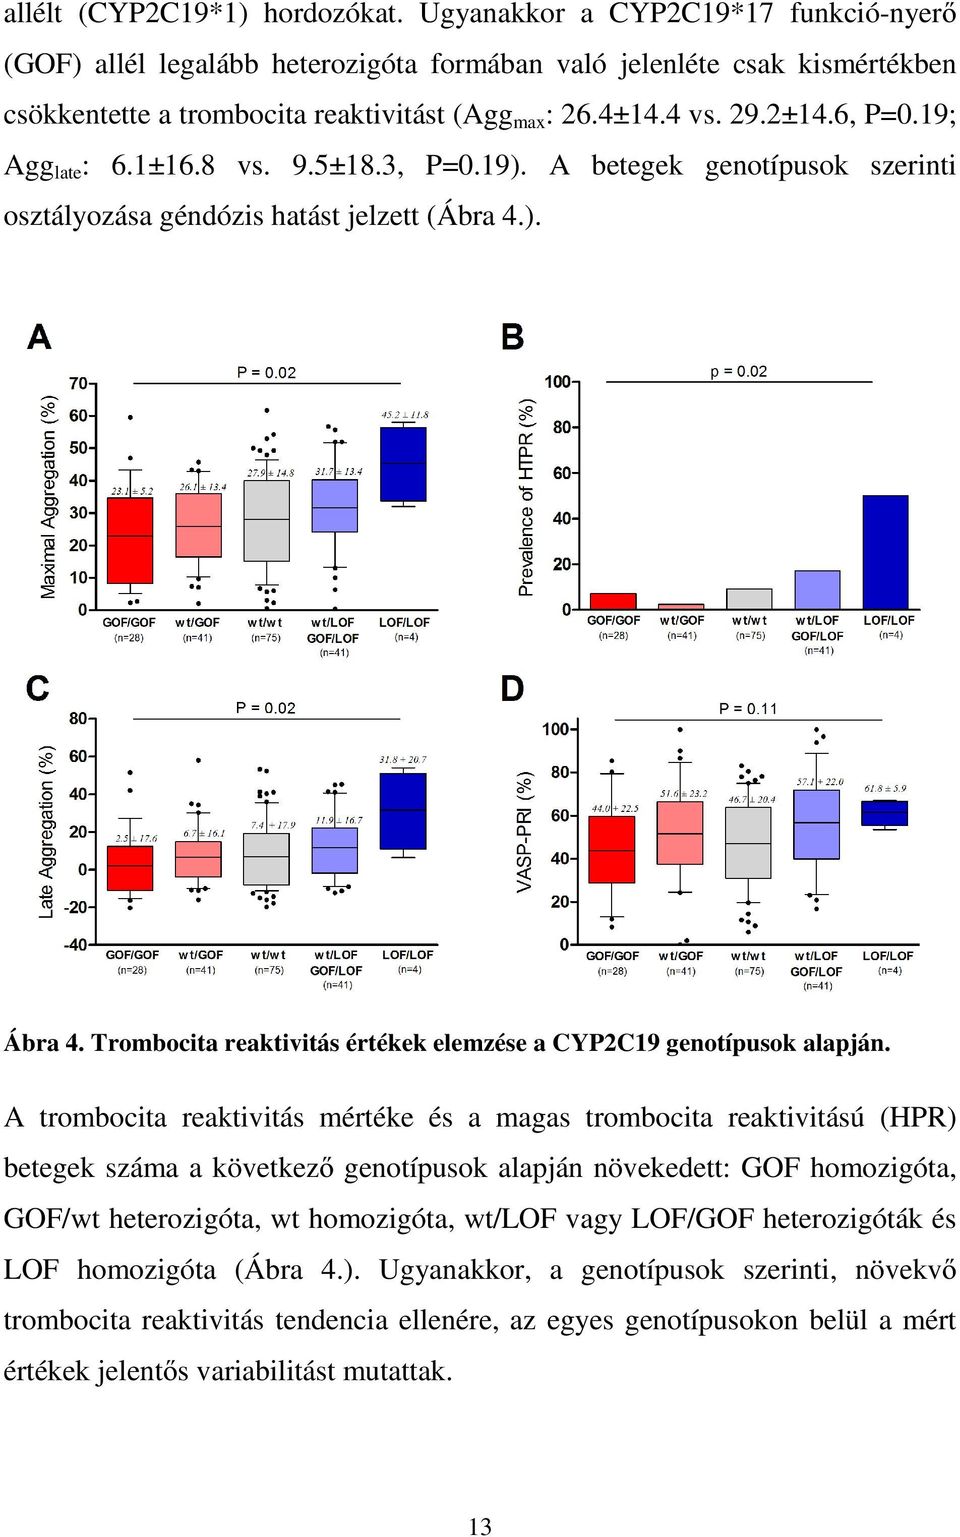 Trombocita reaktivitás értékek elemzése a CYP2C19 genotípusok alapján.